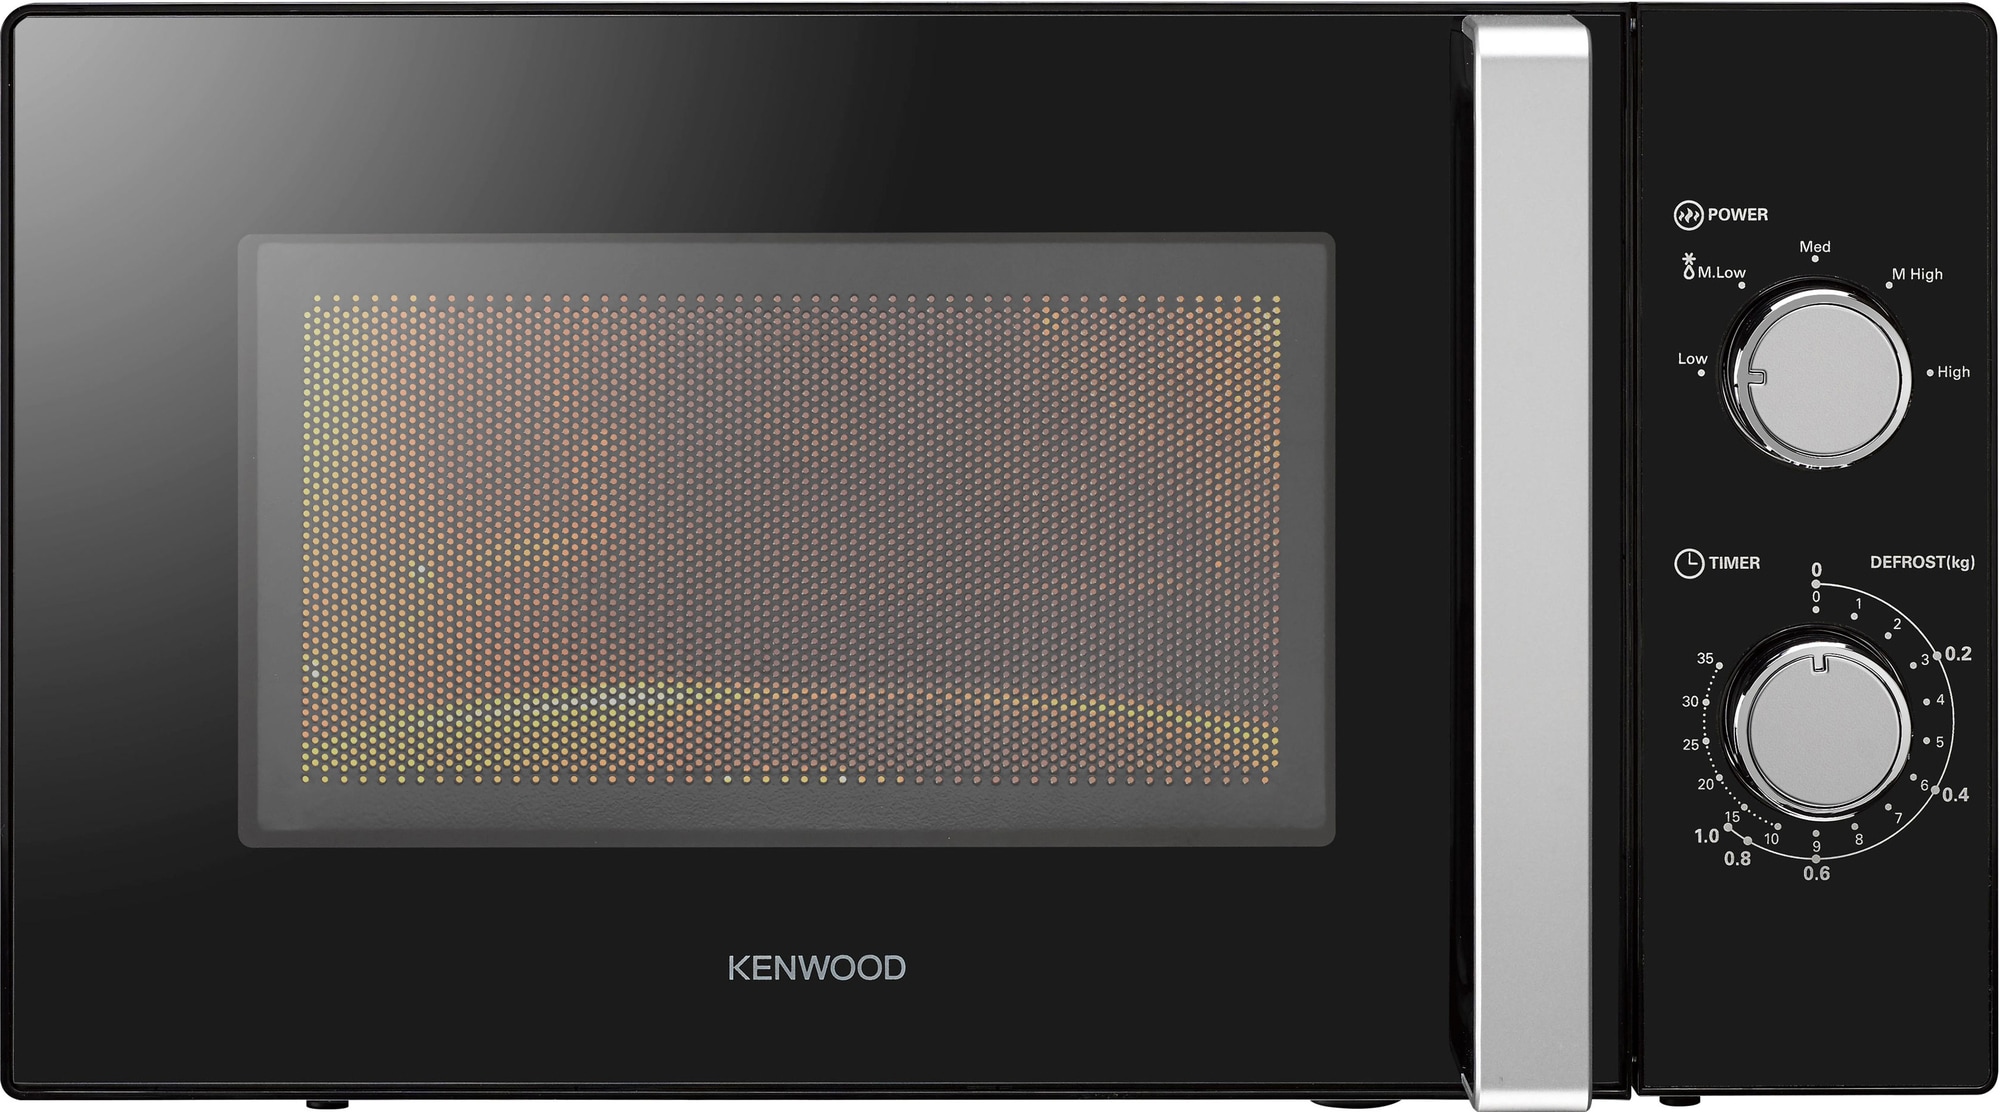 Kenwood mikrobølgeovn K17MSB21E (sort) - Elkjøp